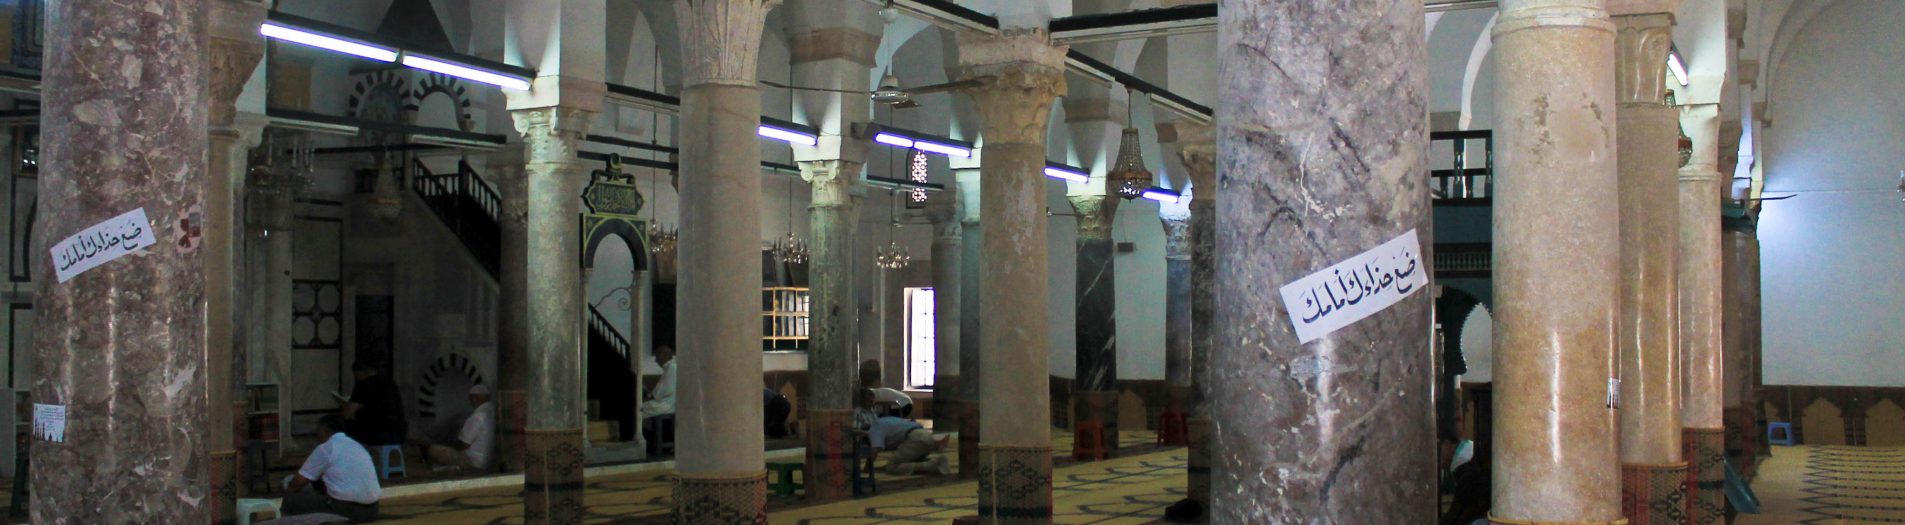 Mosquée Youssef Dey جامع يوسف داي